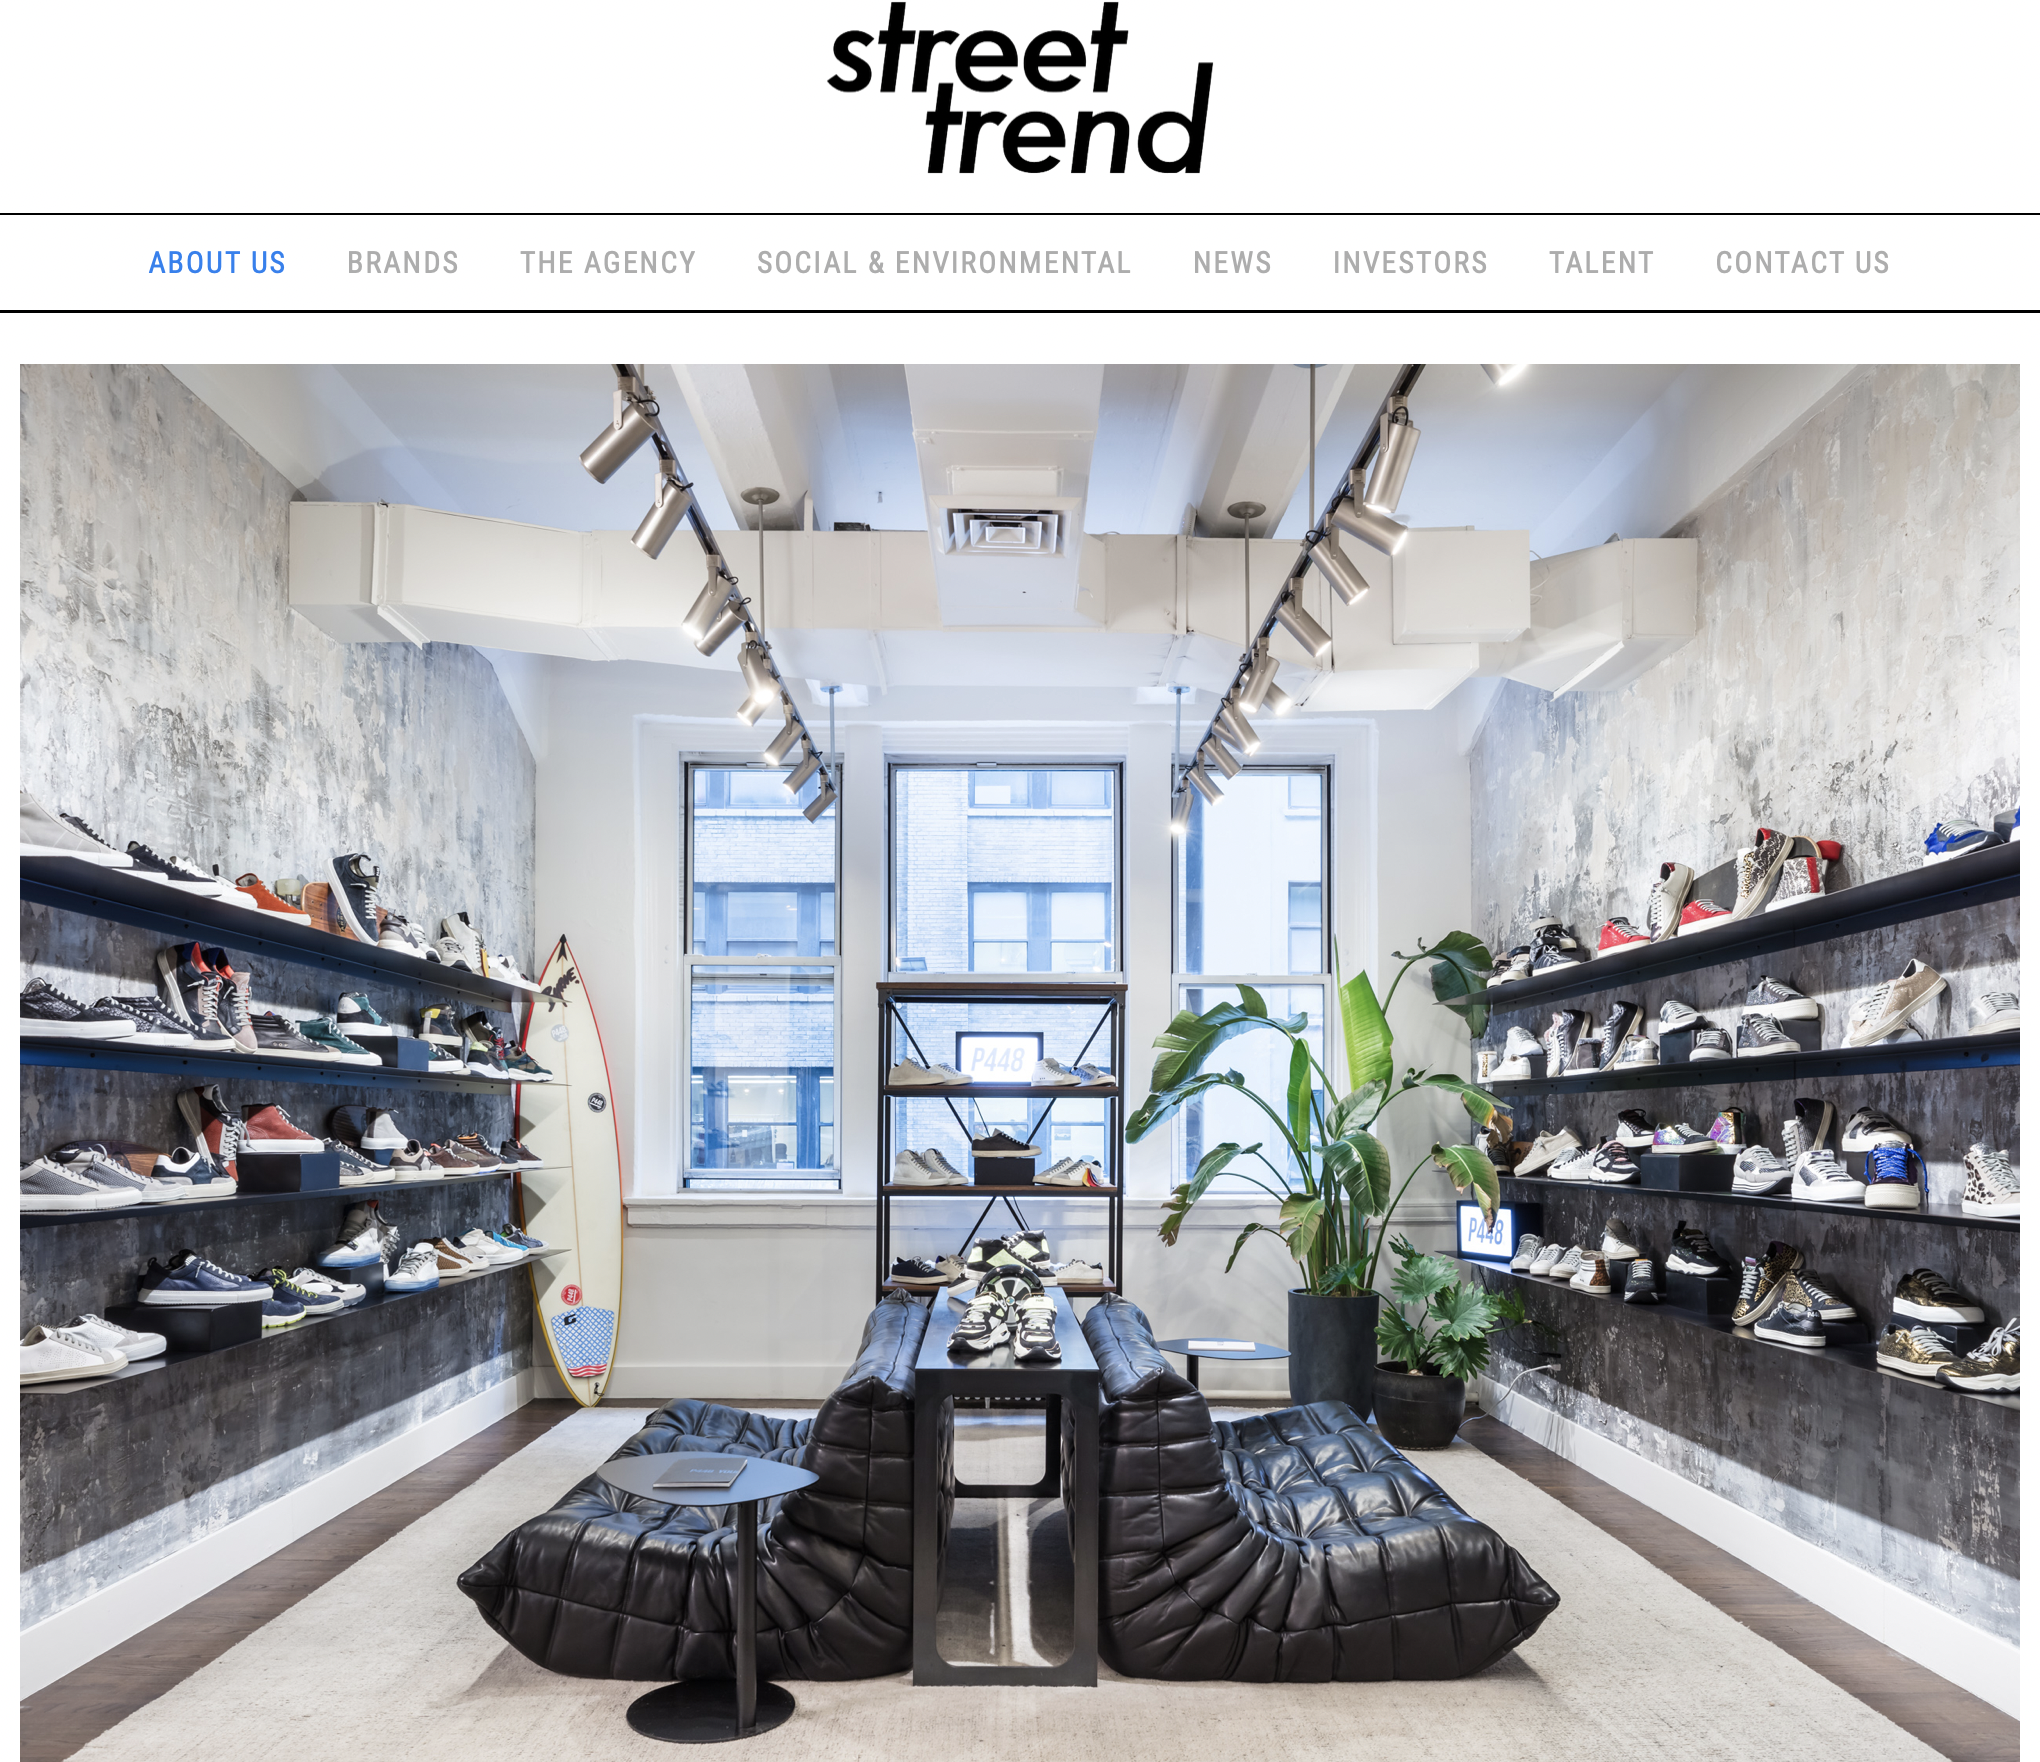 美国著名演员 Mark Wahlberg 投资“奢华街头风”运动鞋品牌 P448 的母公司 StreetTrend